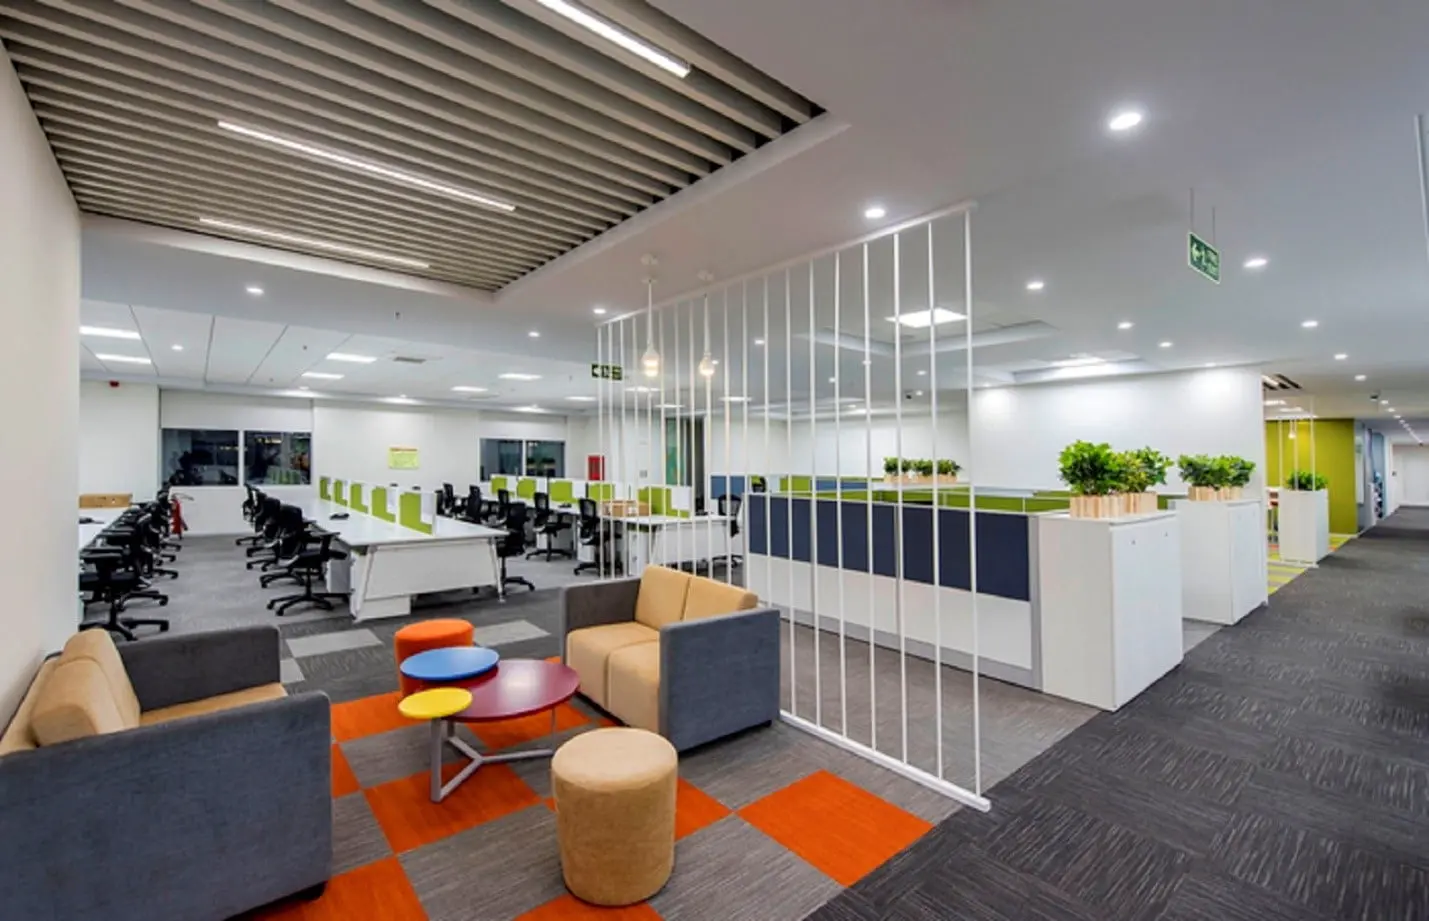 Thiết kế nội thất văn phòng phù hợp với văn hóa của công ty